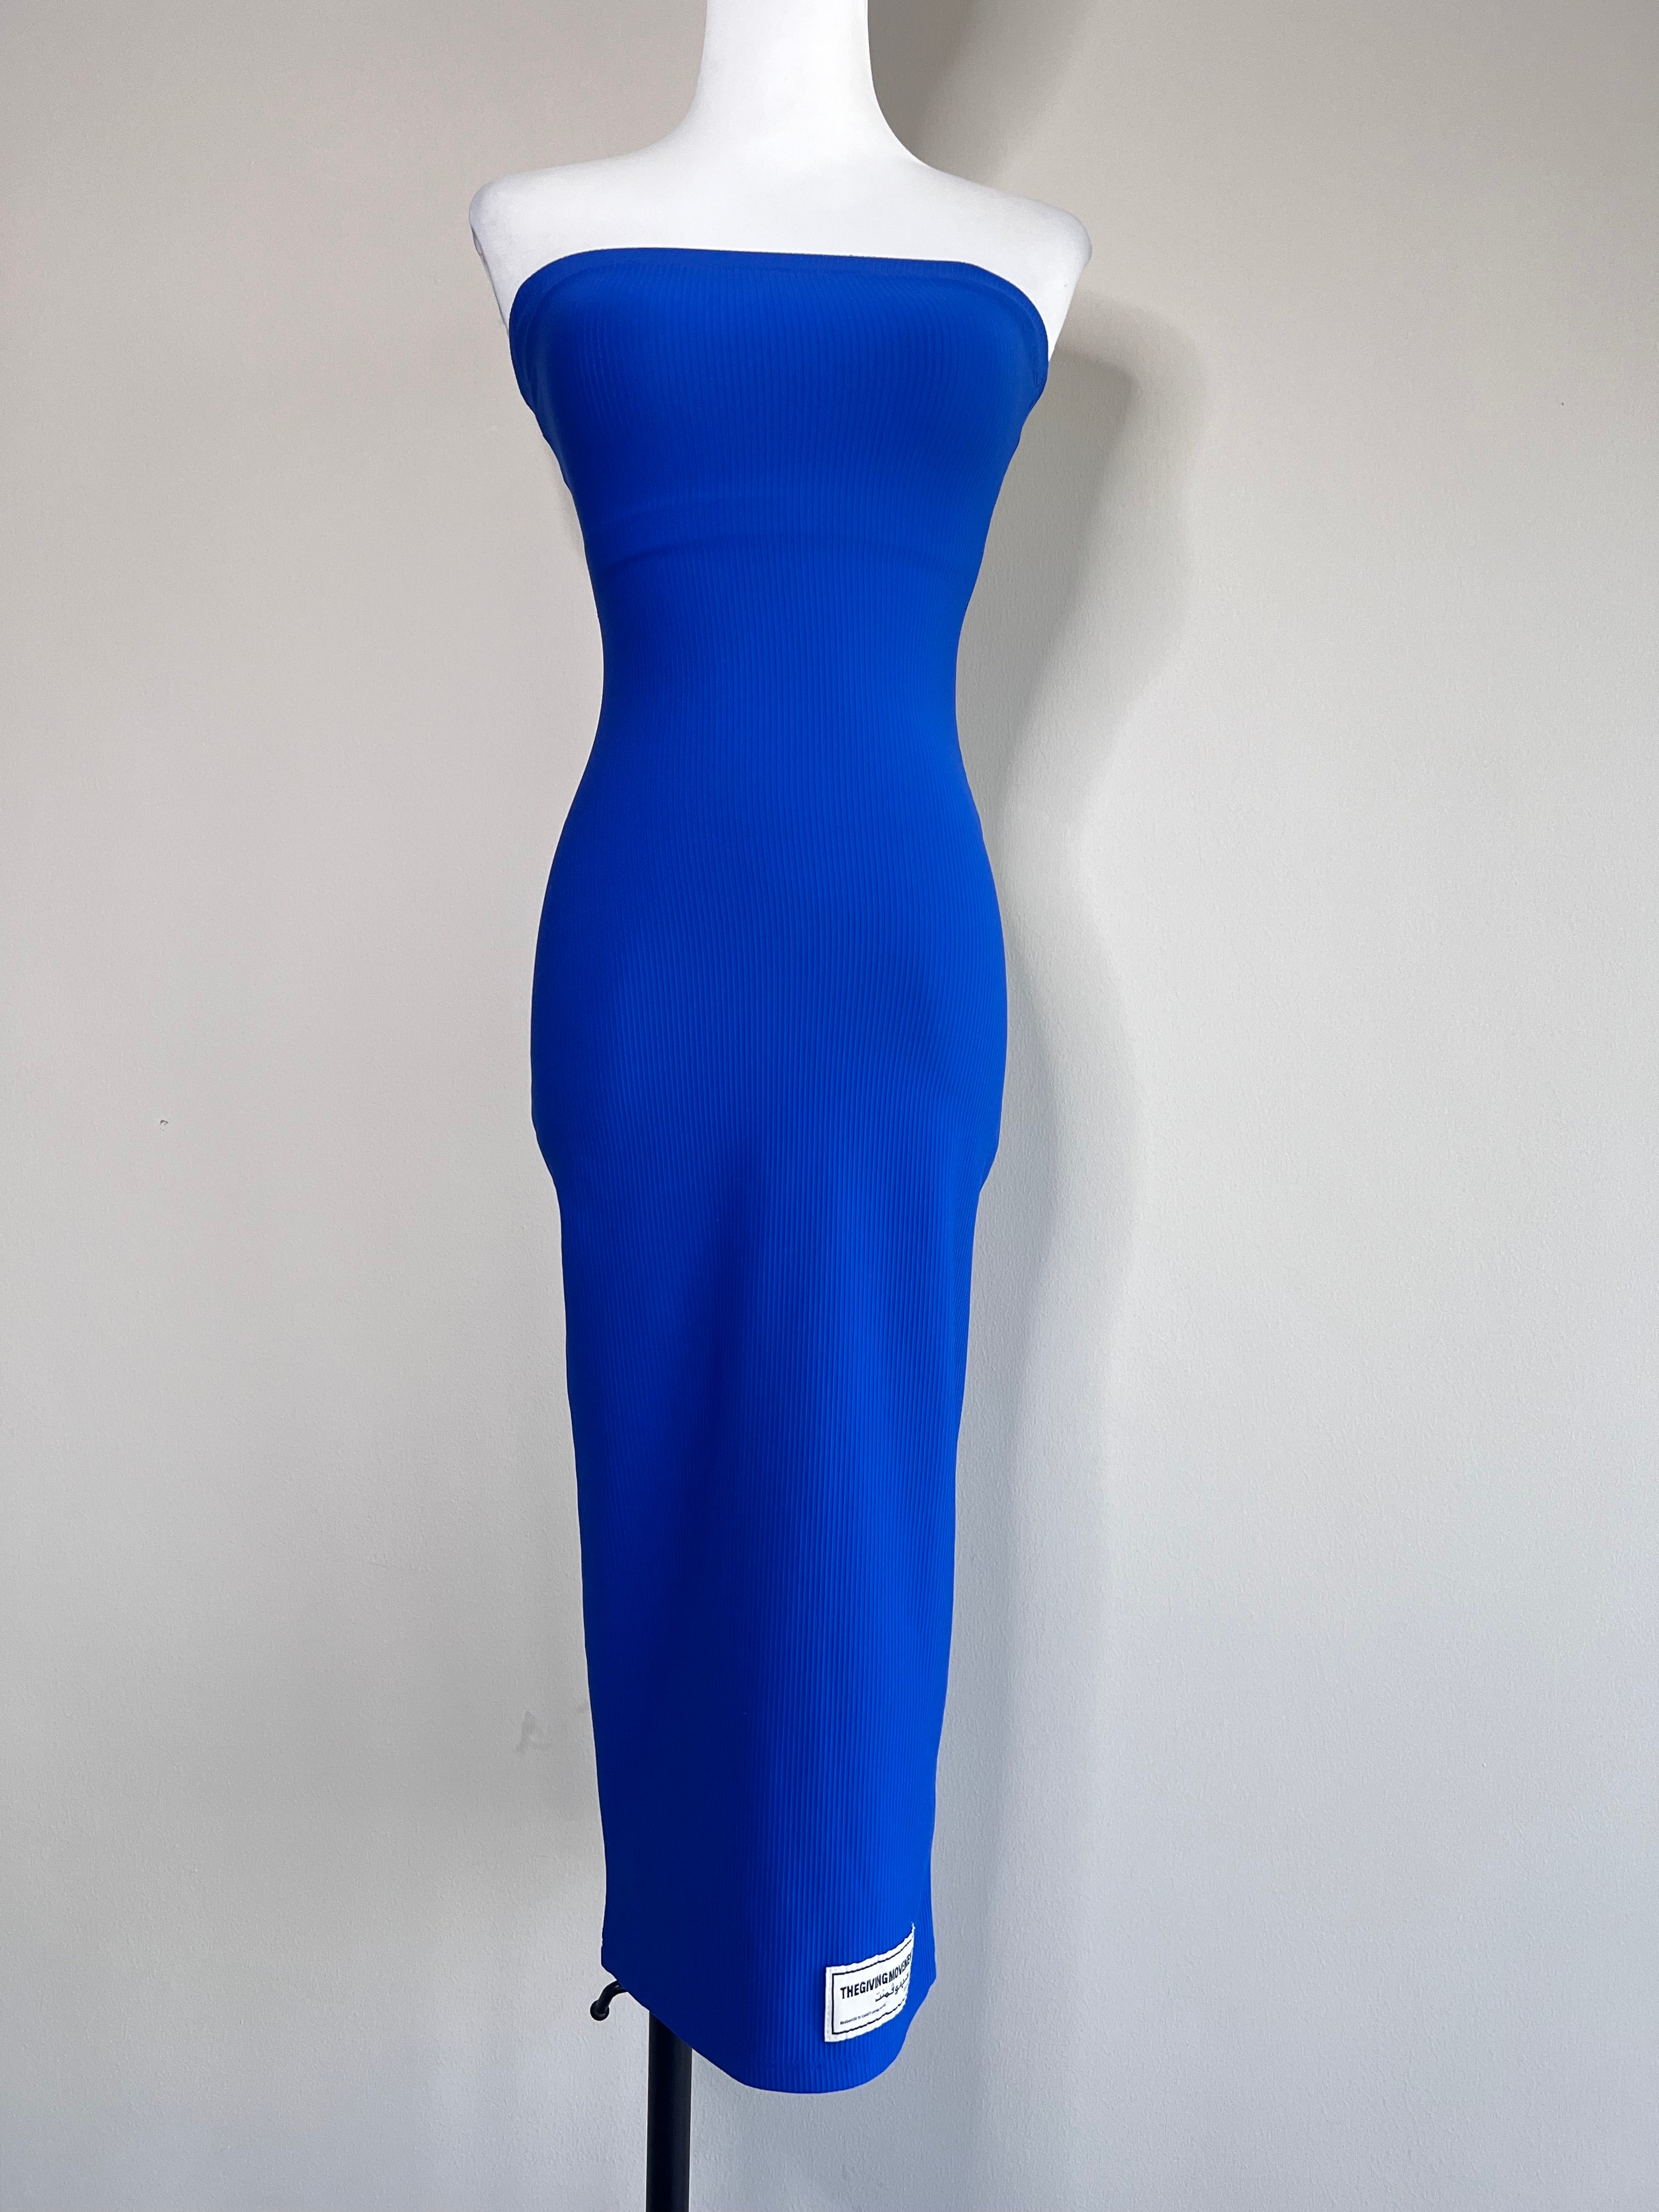 BRAND NEW! Indigo blue strapless dress - THEGIVINGMOVEMENT